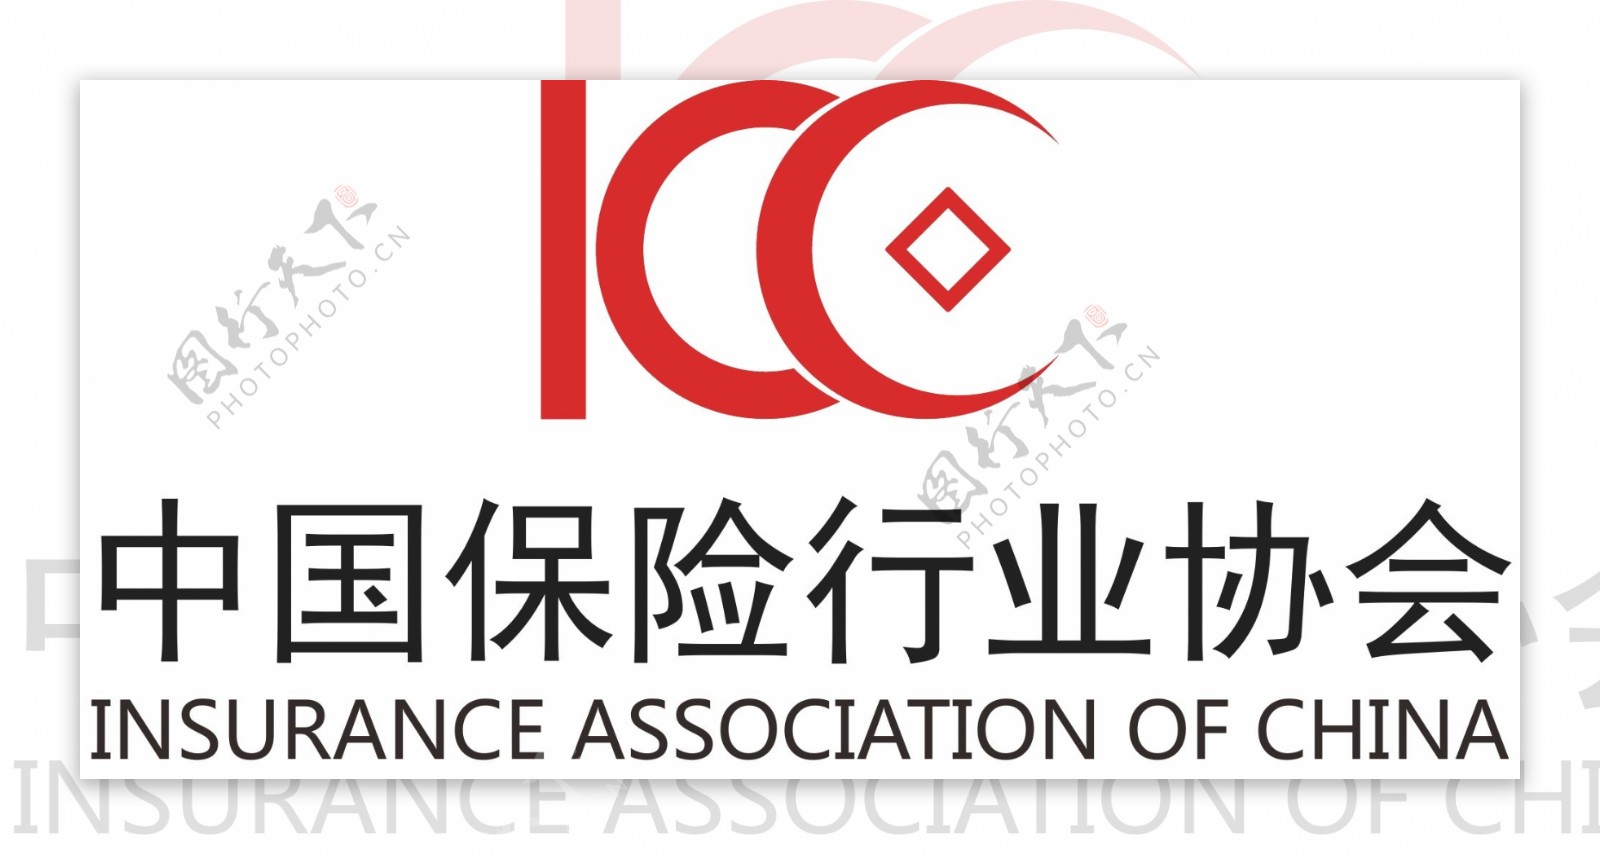 中国保险行业协会logo设计